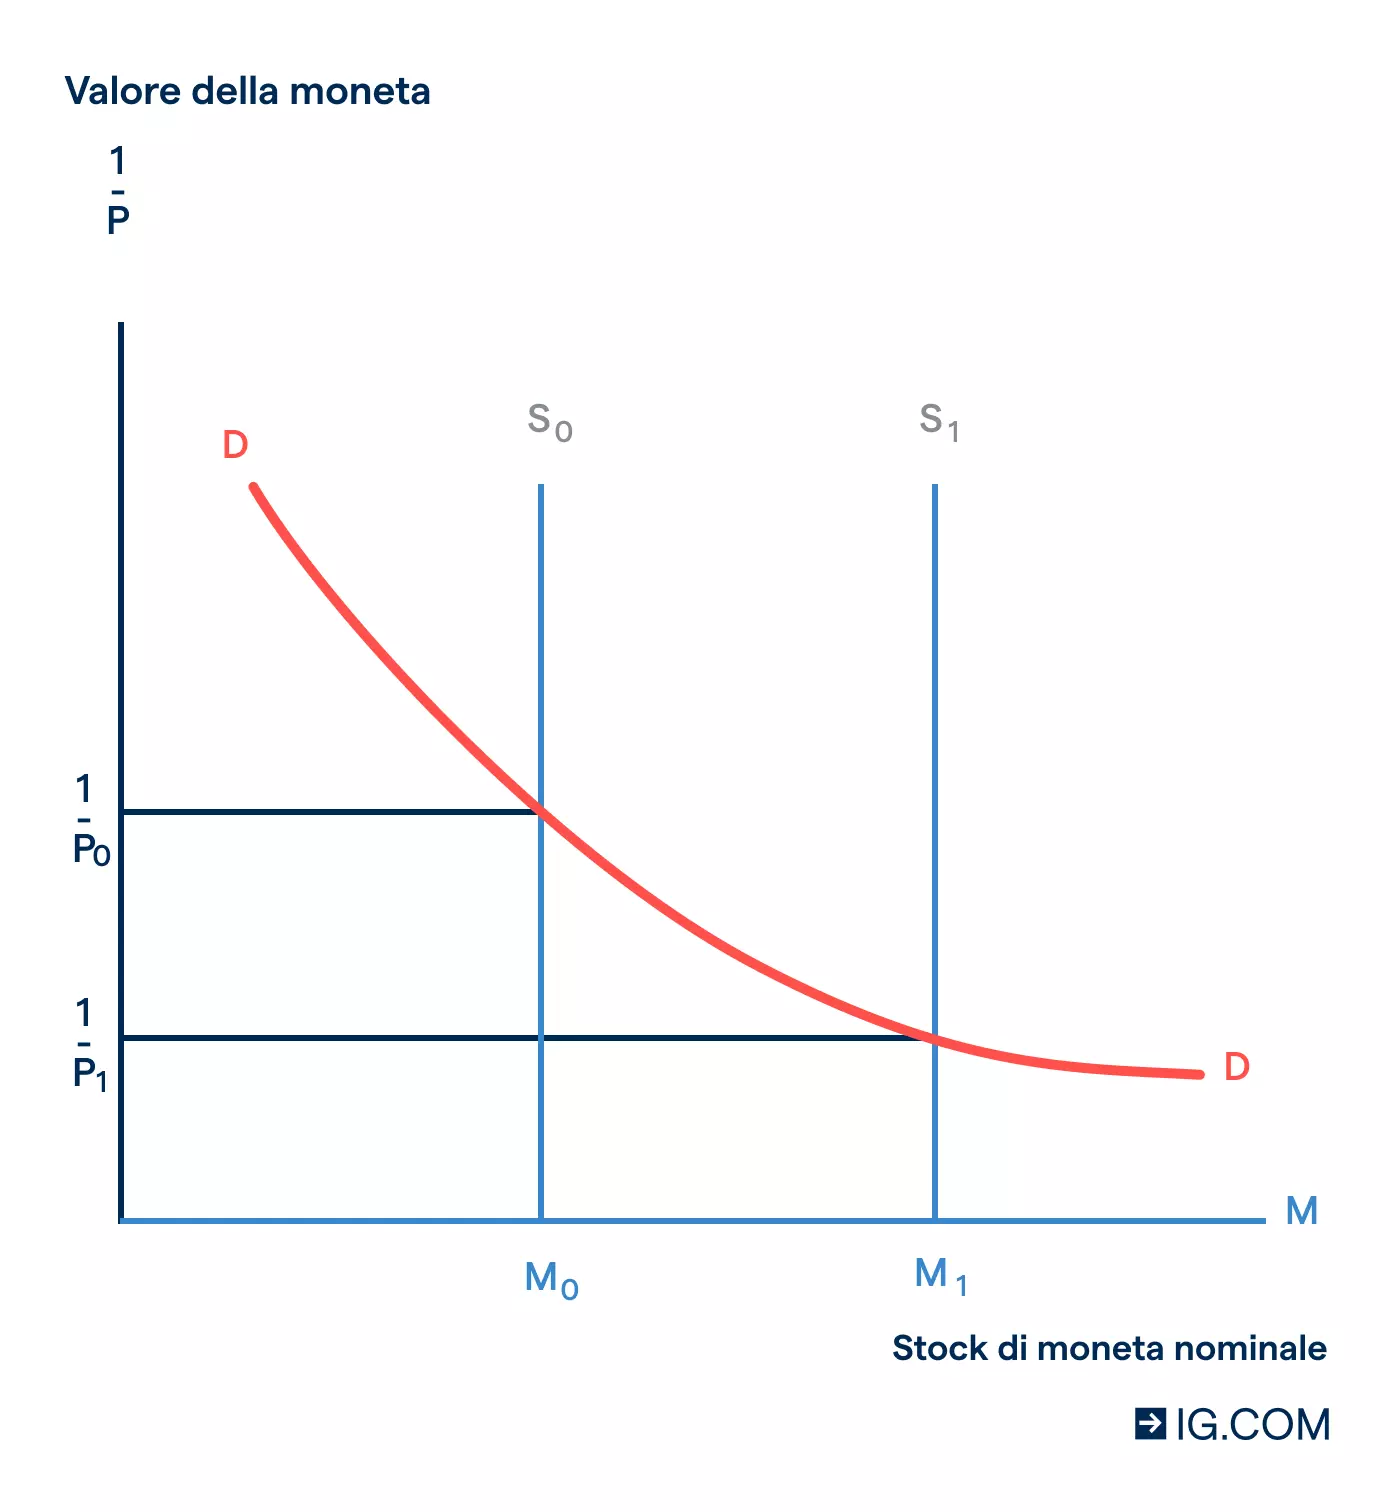 Nel grafico la curva da S1 a S2 mostra una diminuzione della domanda e quella da P1 a P2 un aumento del prezzo o del valore del denaro.